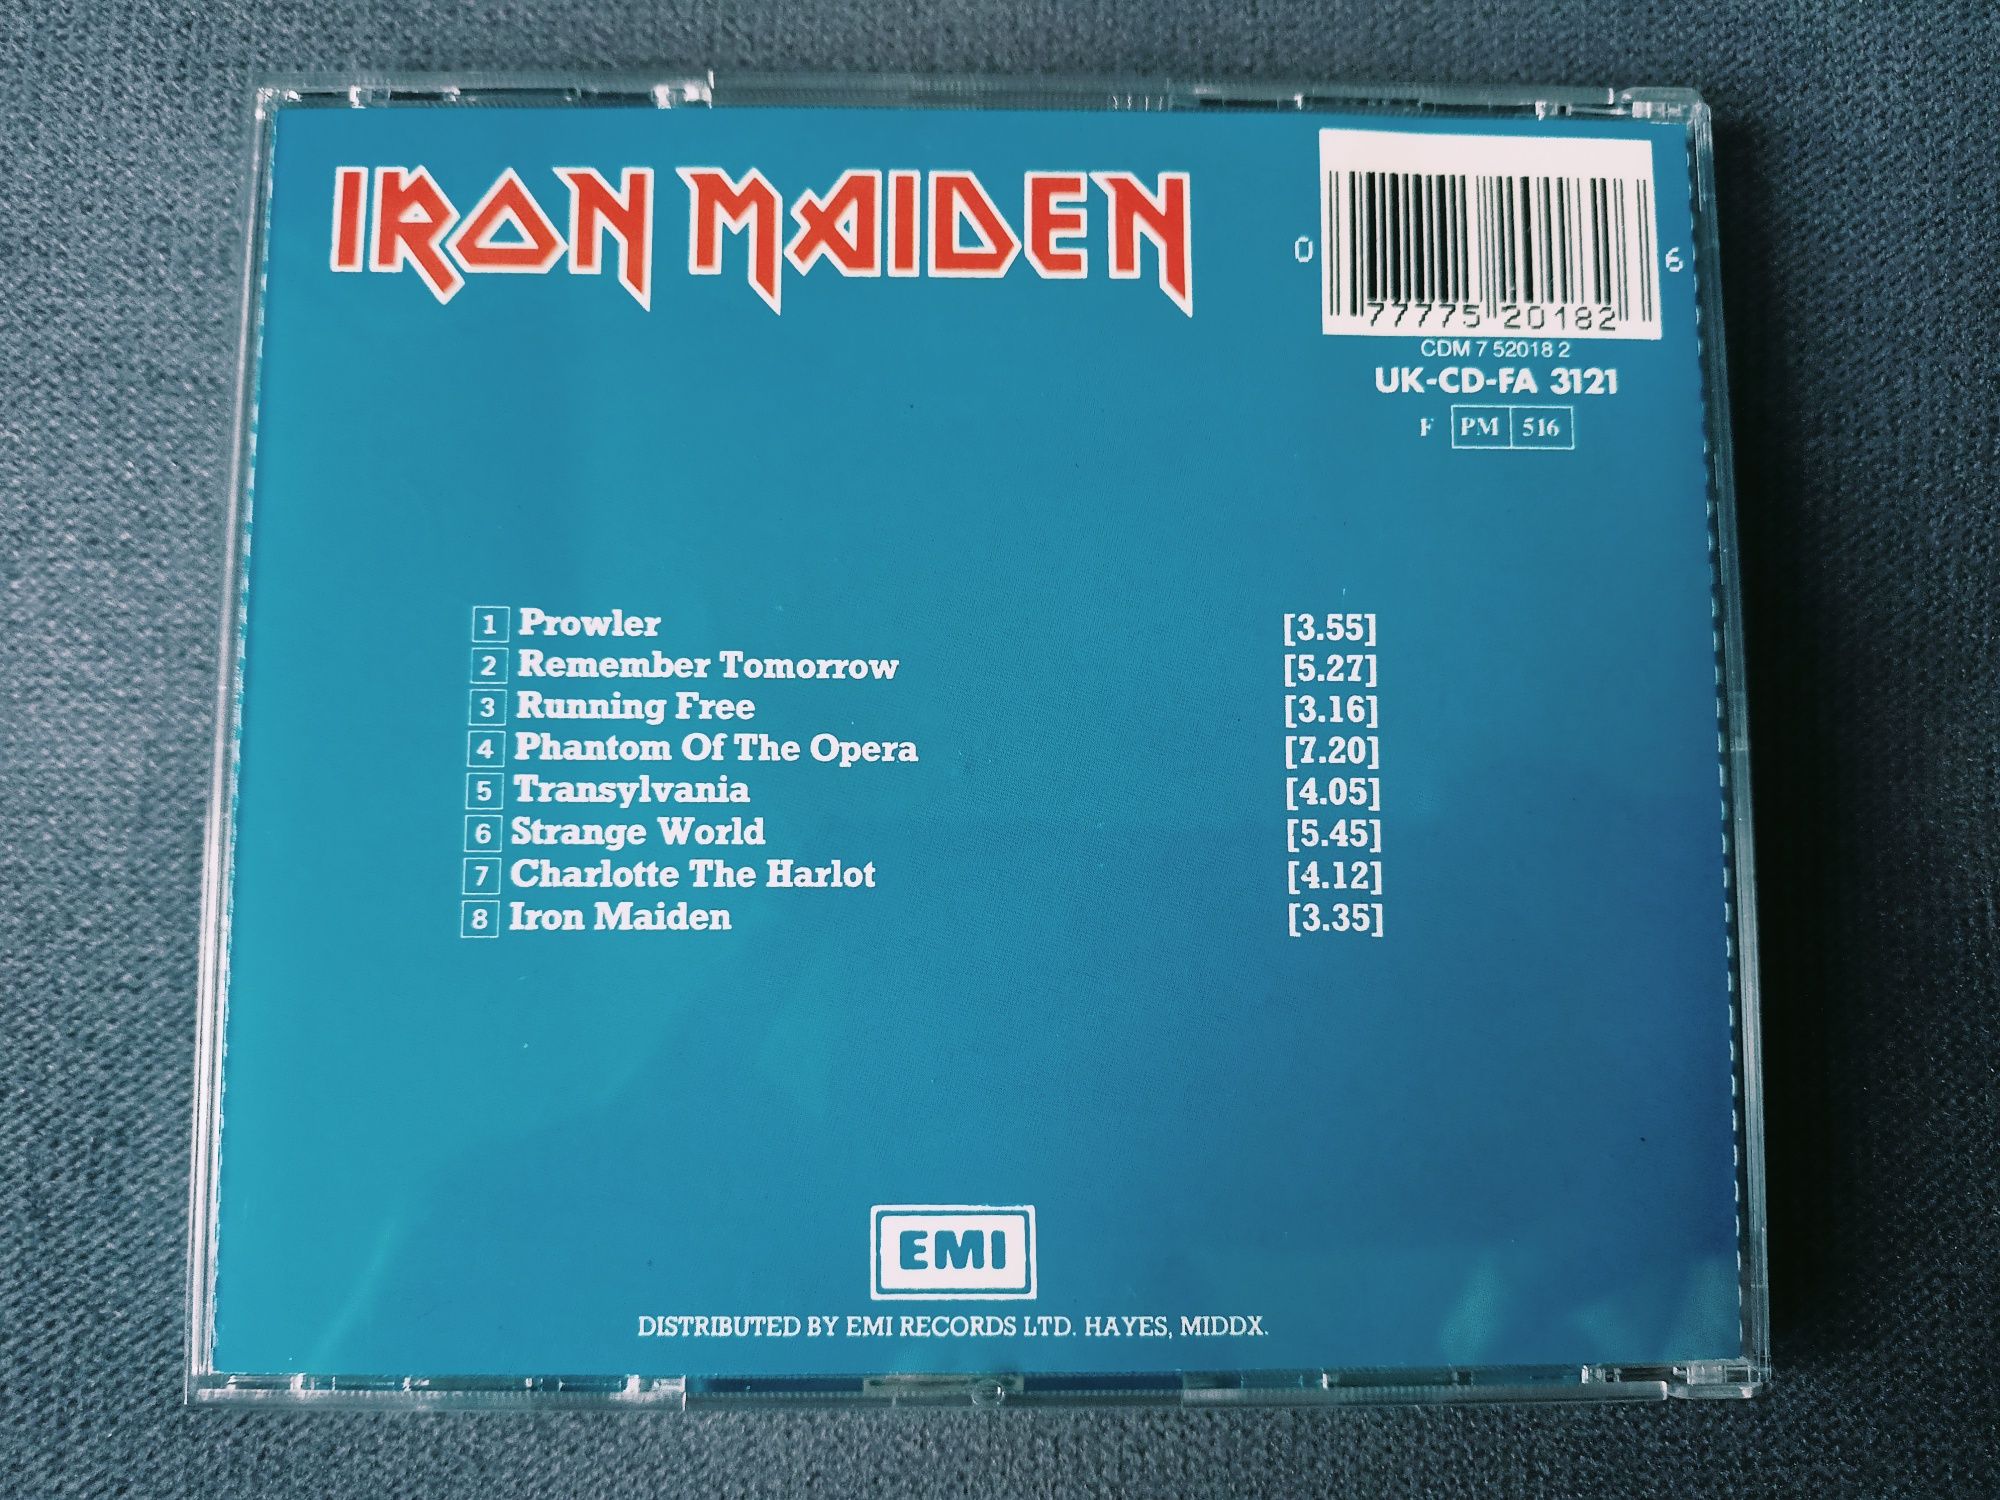 Iron Maiden - Iron Maiden/first press UK